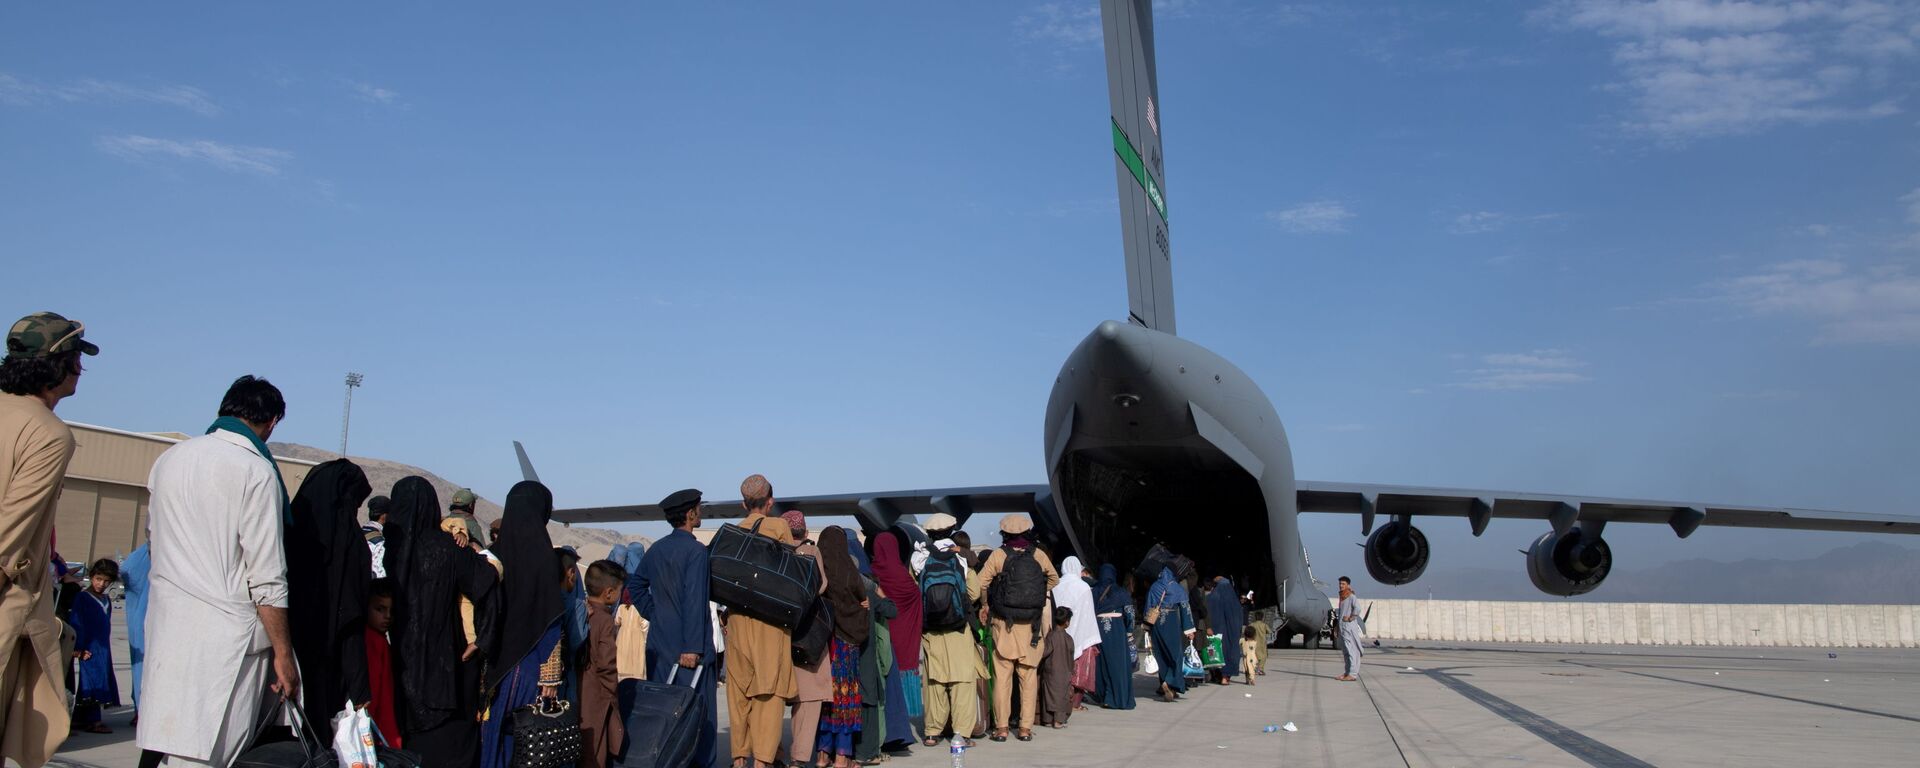 عمليات إجلاء أجانب وأفغان من مطار كابول بعد سيطرة حركة طالبان على الحكم - سبوتنيك عربي, 1920, 02.10.2021